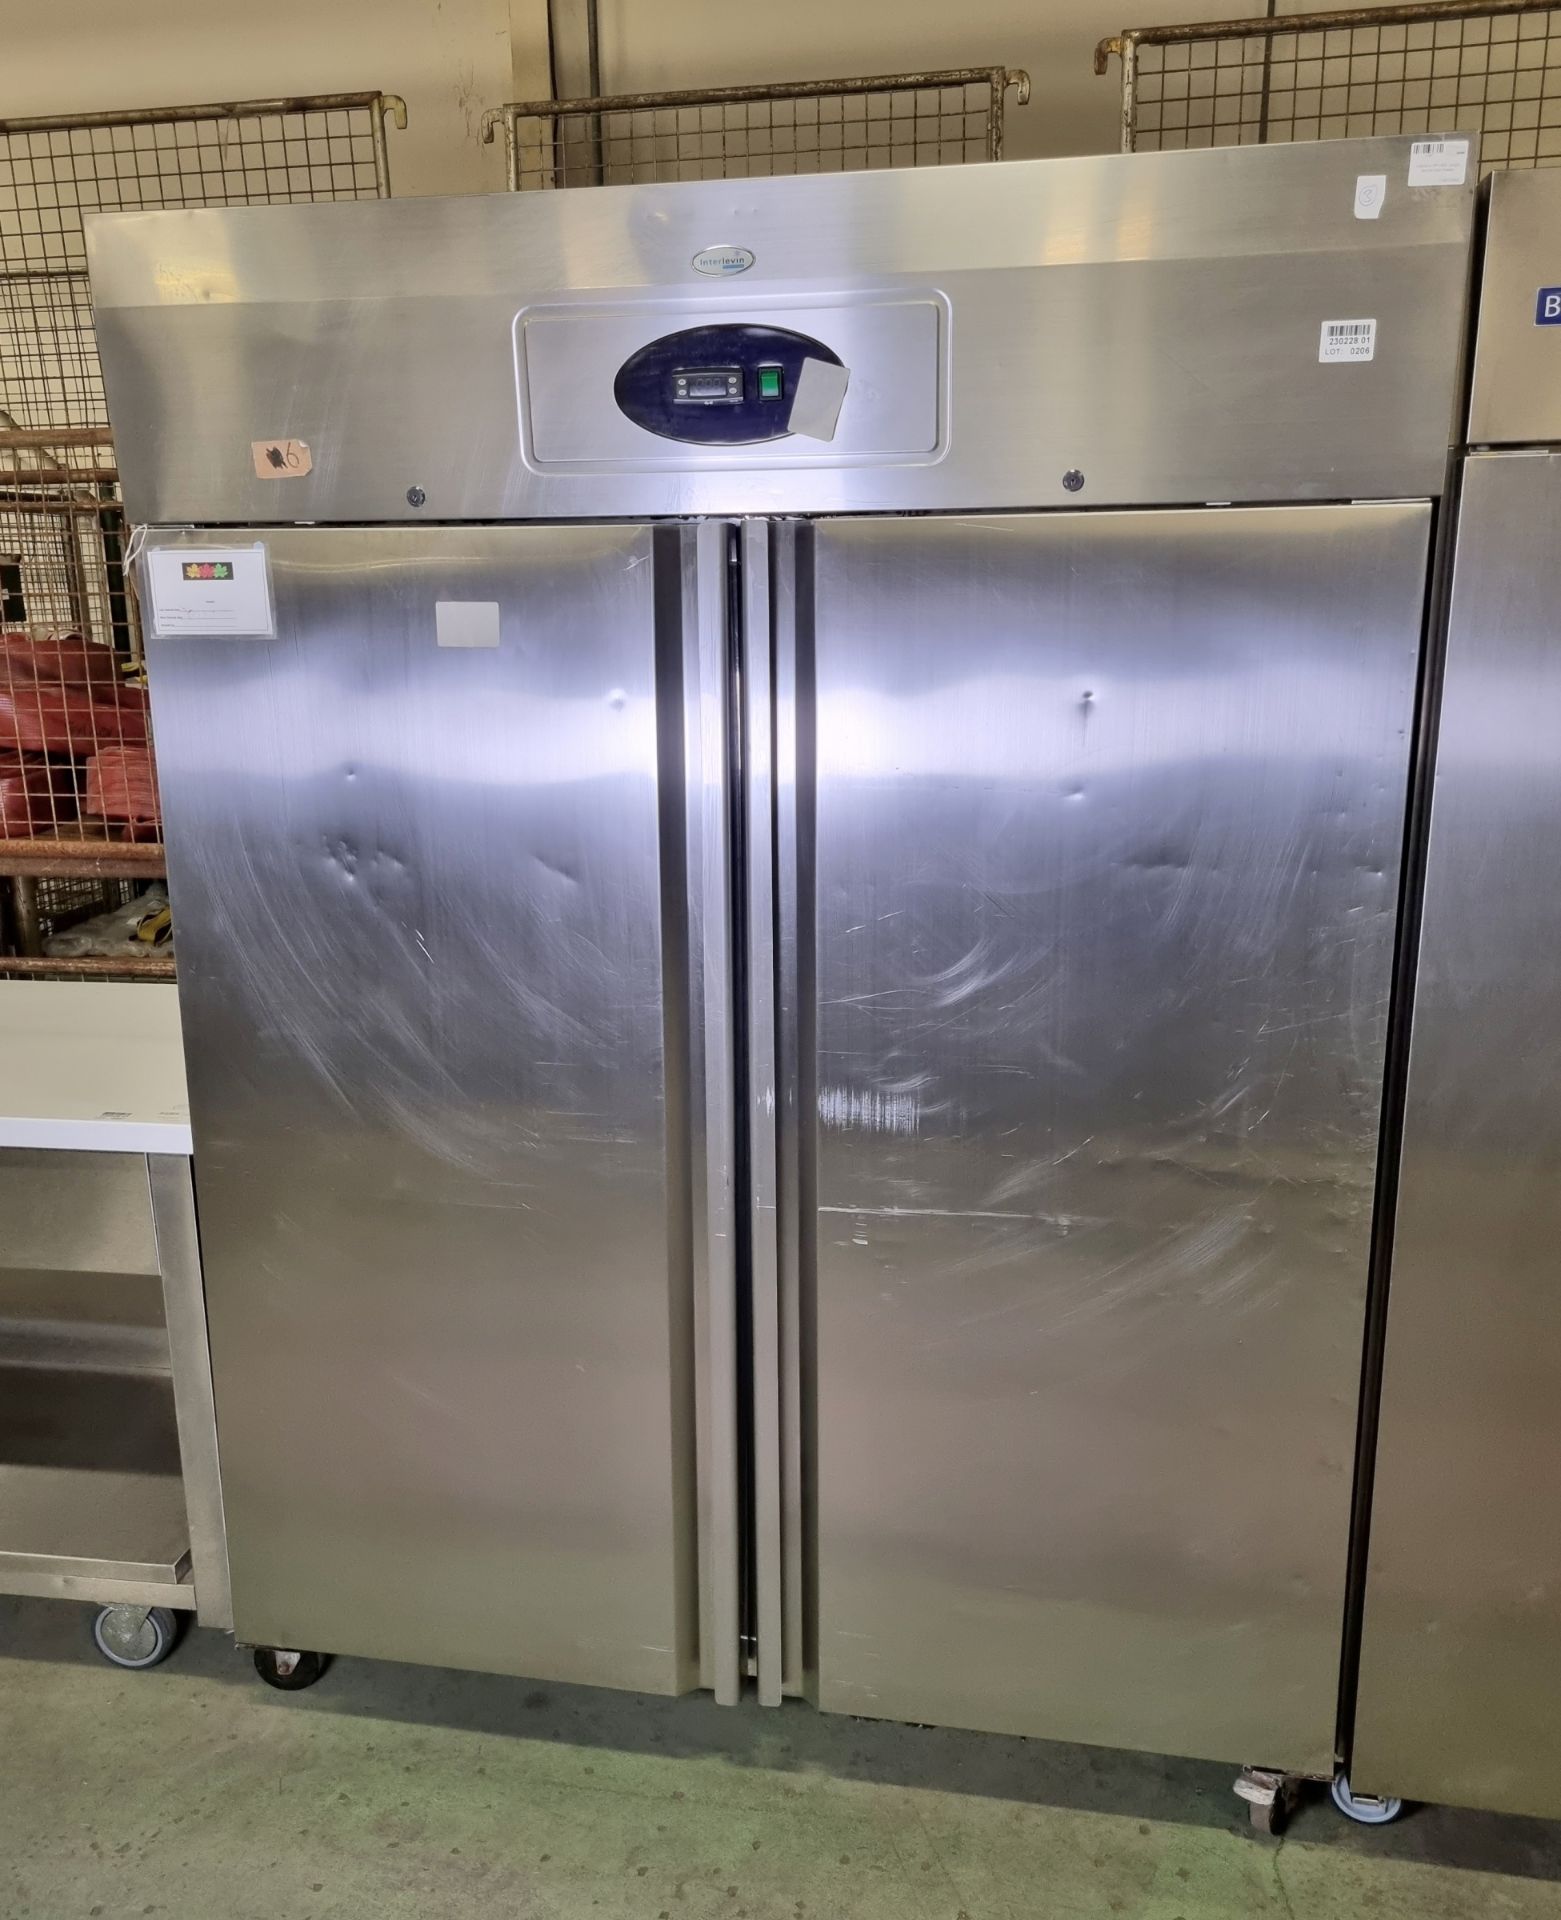 Interlevin RF1420 upright double door freezer